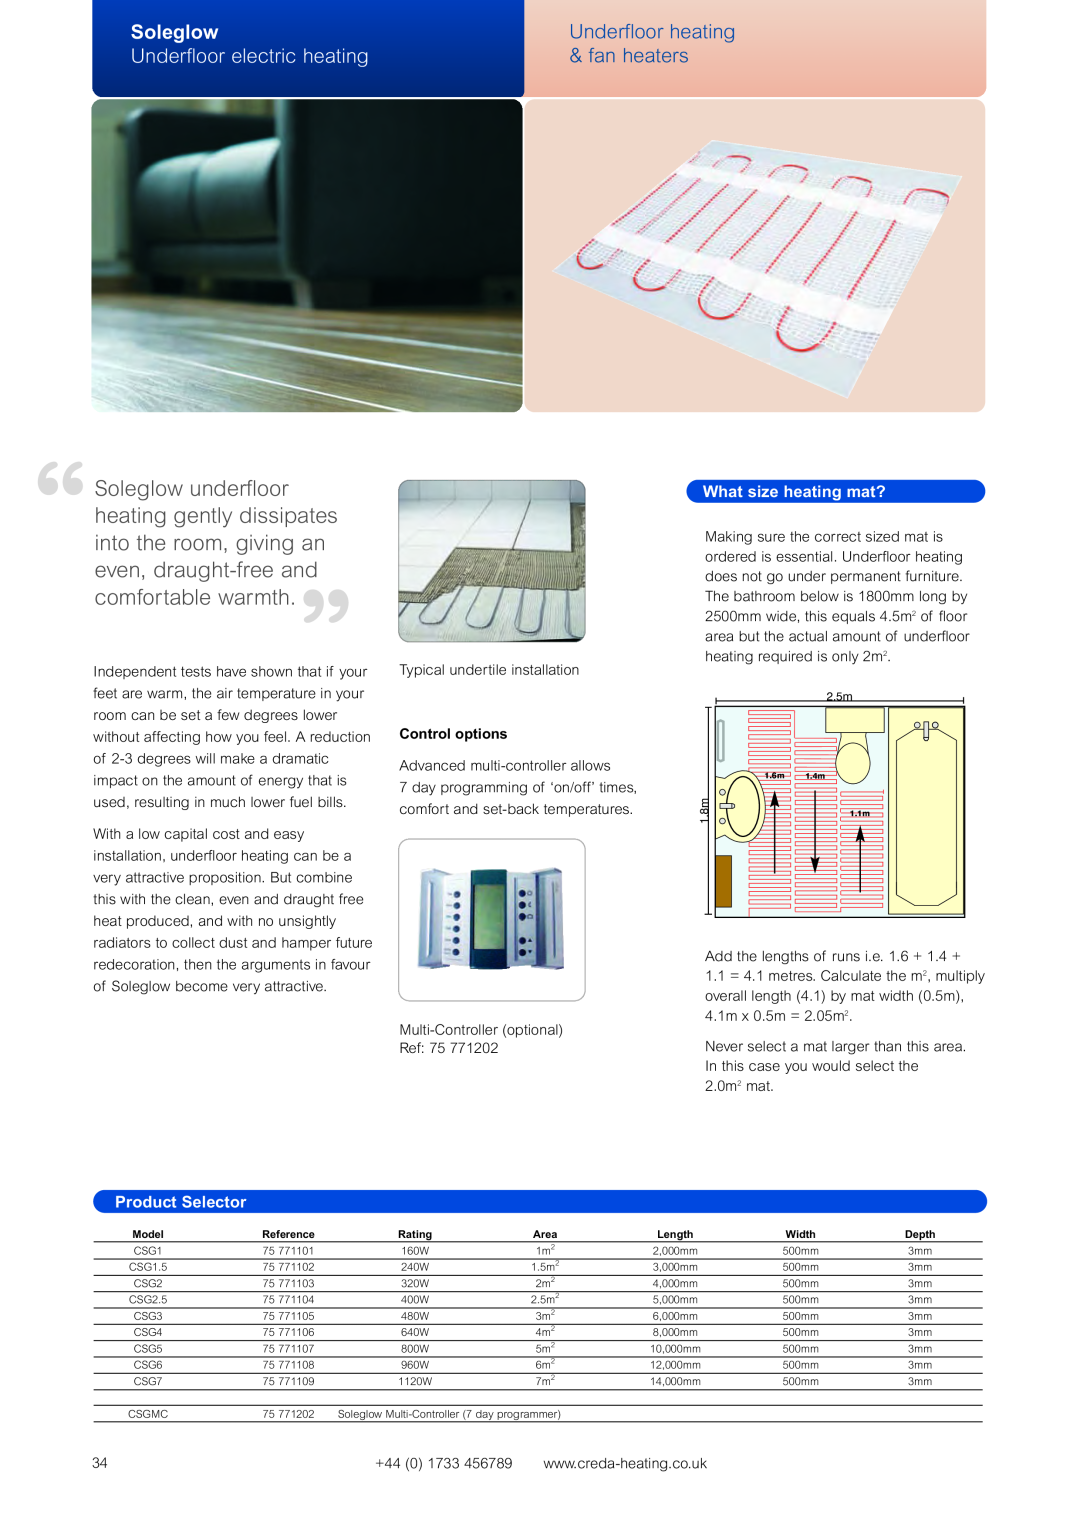 Creda Heating Solution Soleglow, Underfloor heating, Underfloor electric heating, fan heaters, What size heating mat? 